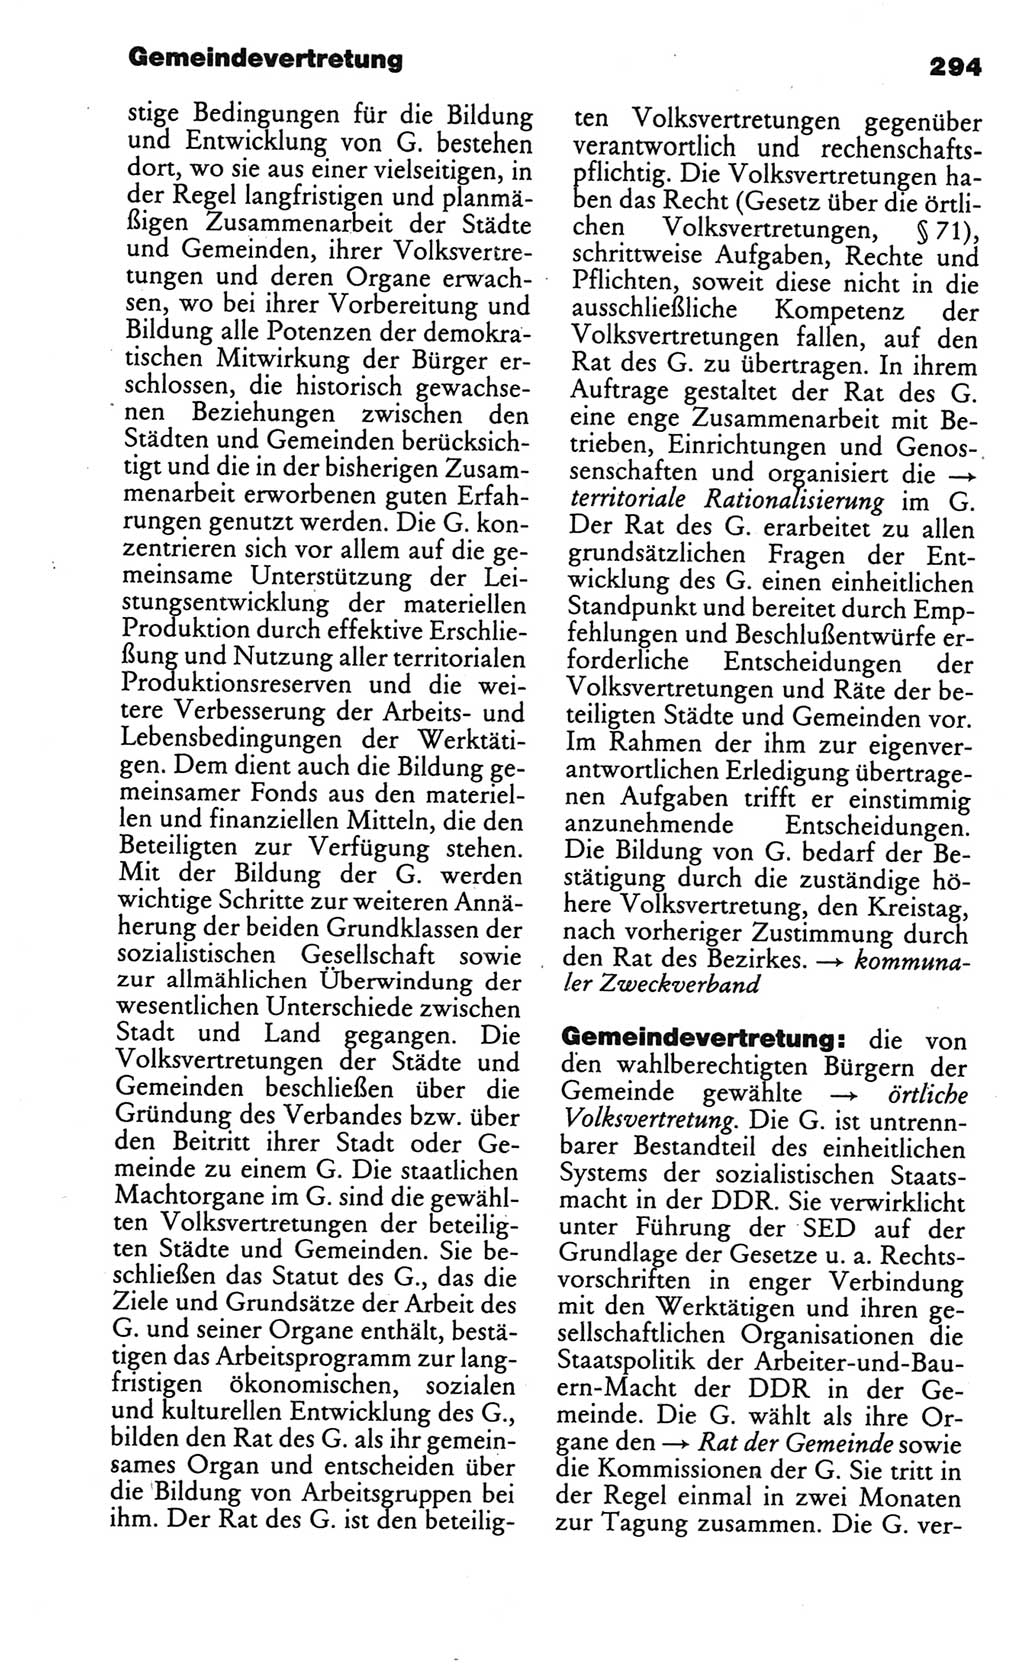 Kleines politisches Wörterbuch [Deutsche Demokratische Republik (DDR)] 1986, Seite 294 (Kl. pol. Wb. DDR 1986, S. 294)